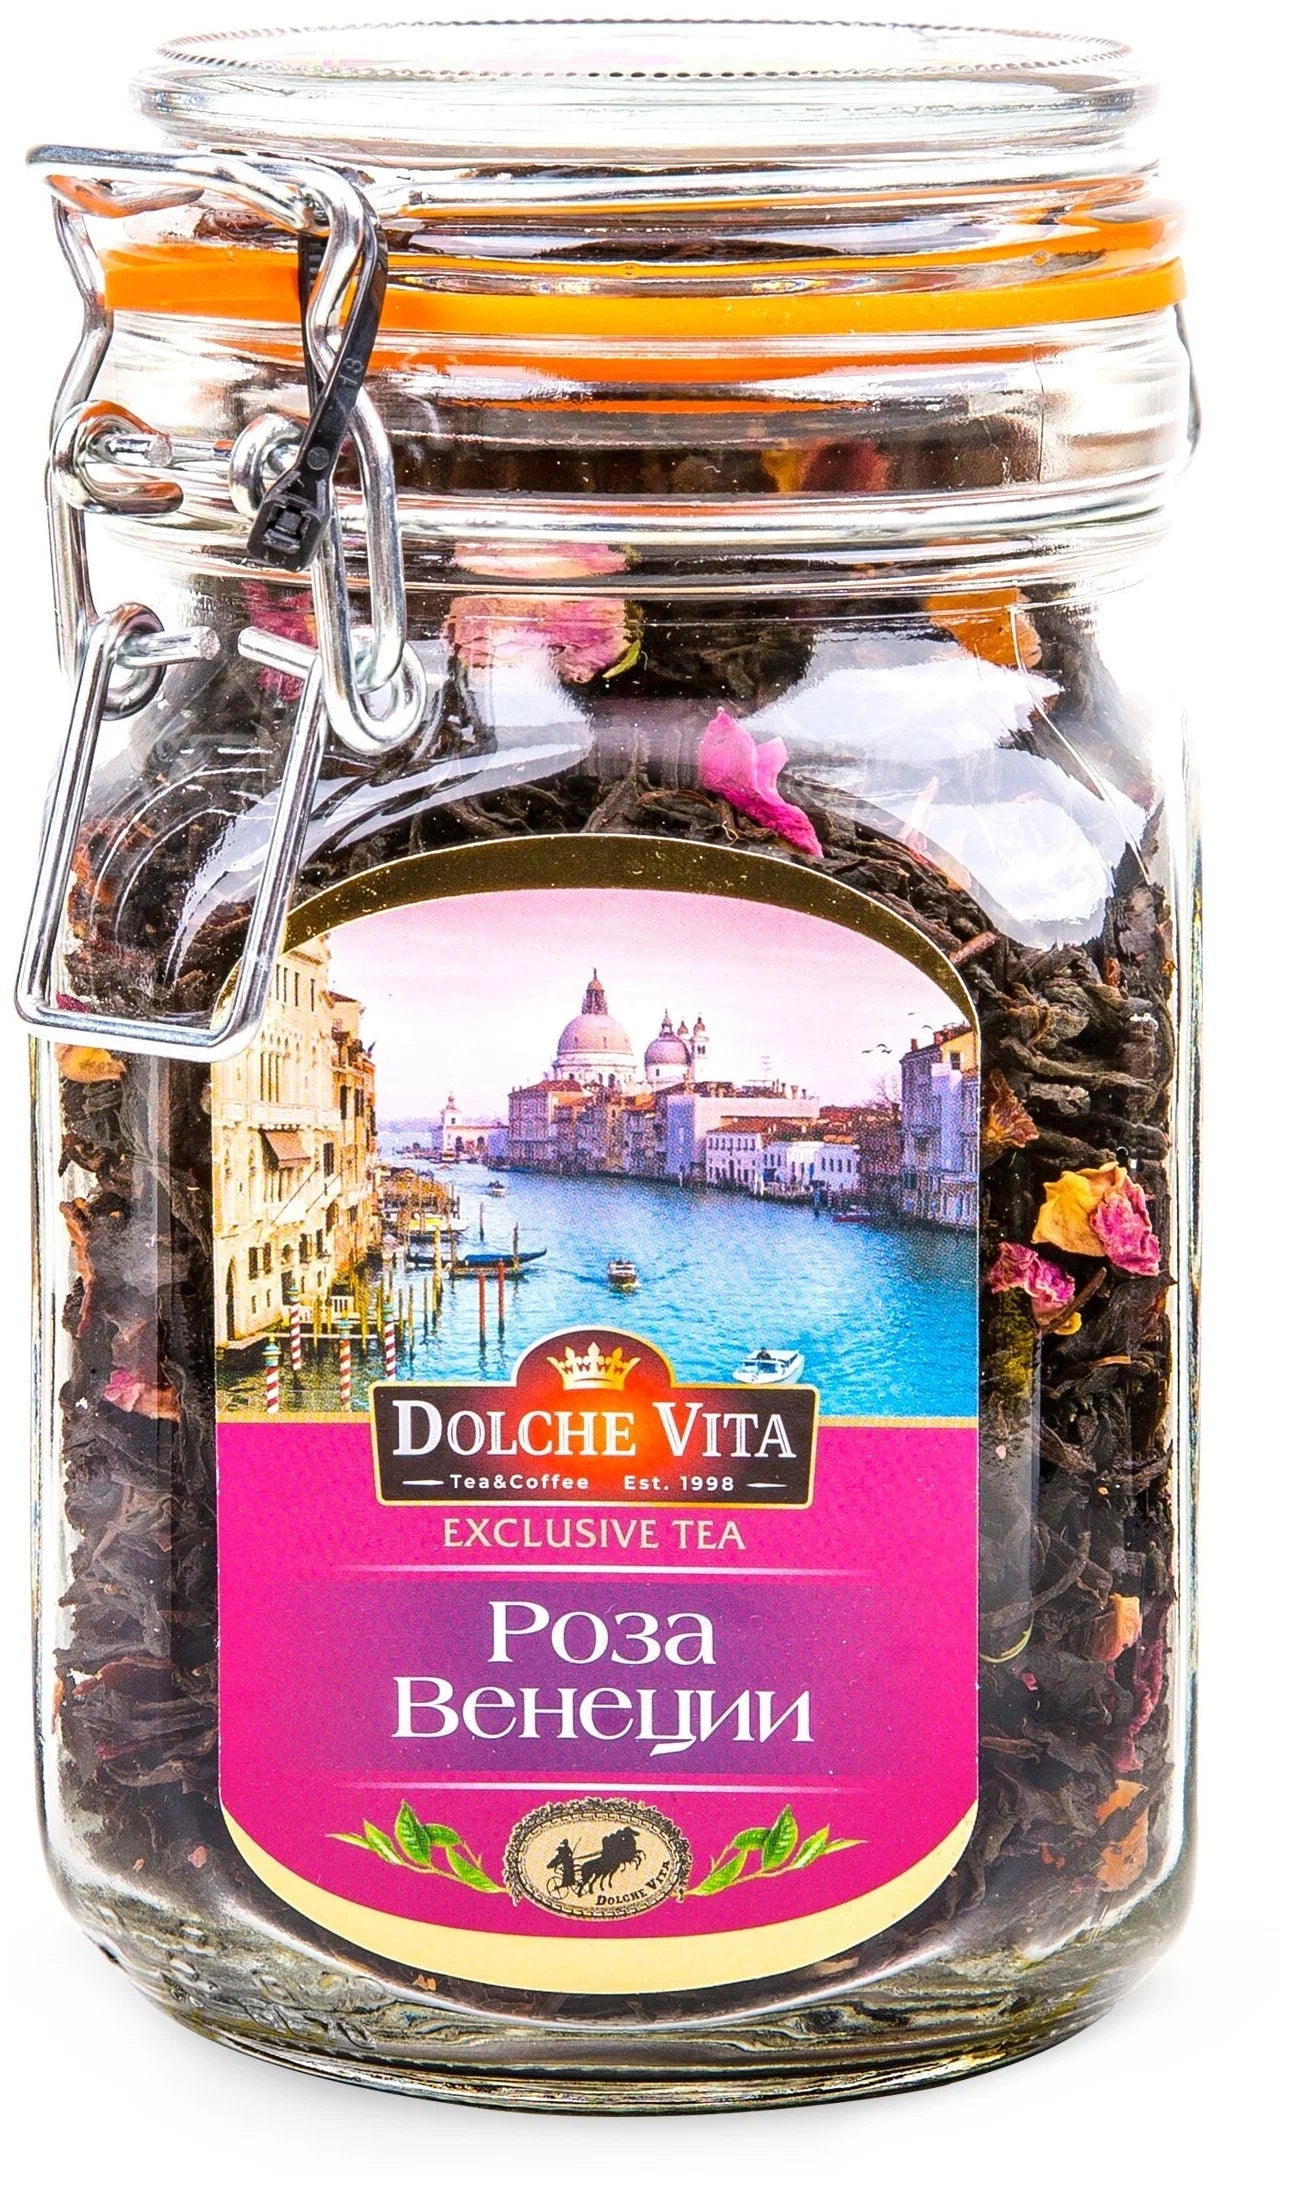 Dolche Vita Black Tea w/ Rose Tea, 125g